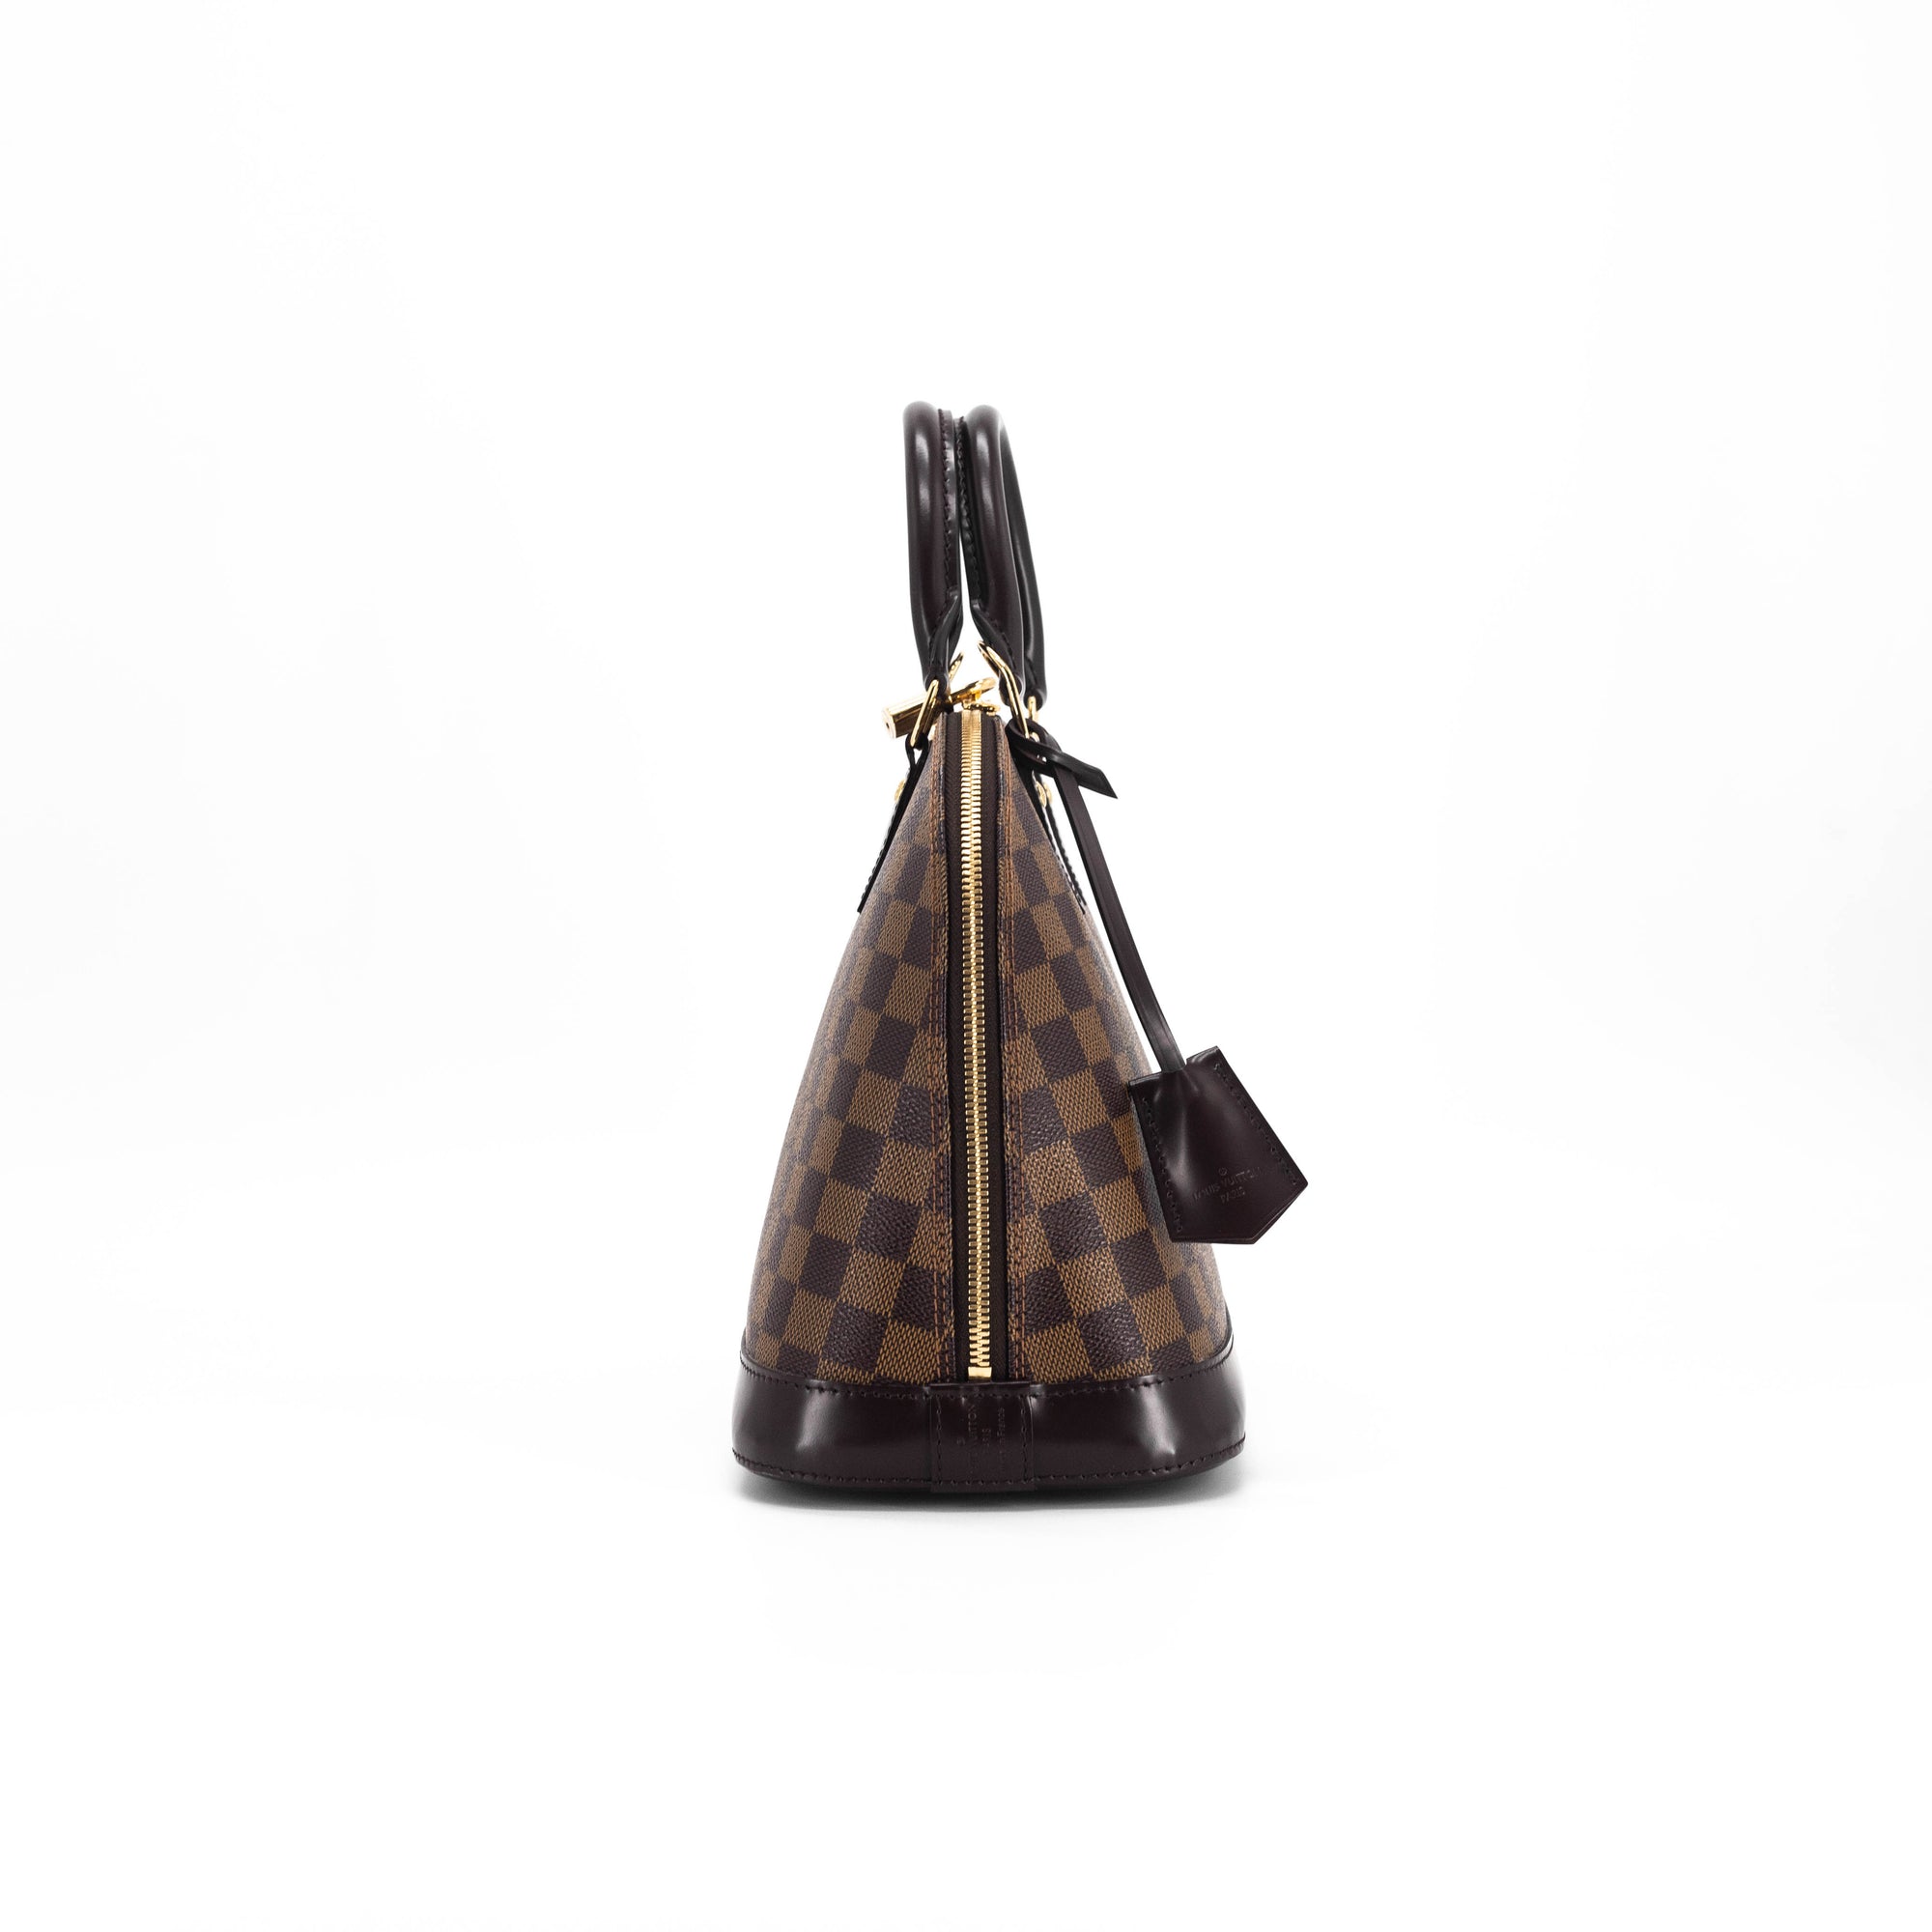 LV Alma PM 001-255-00008 - Luxury Pre-Loved Handbags